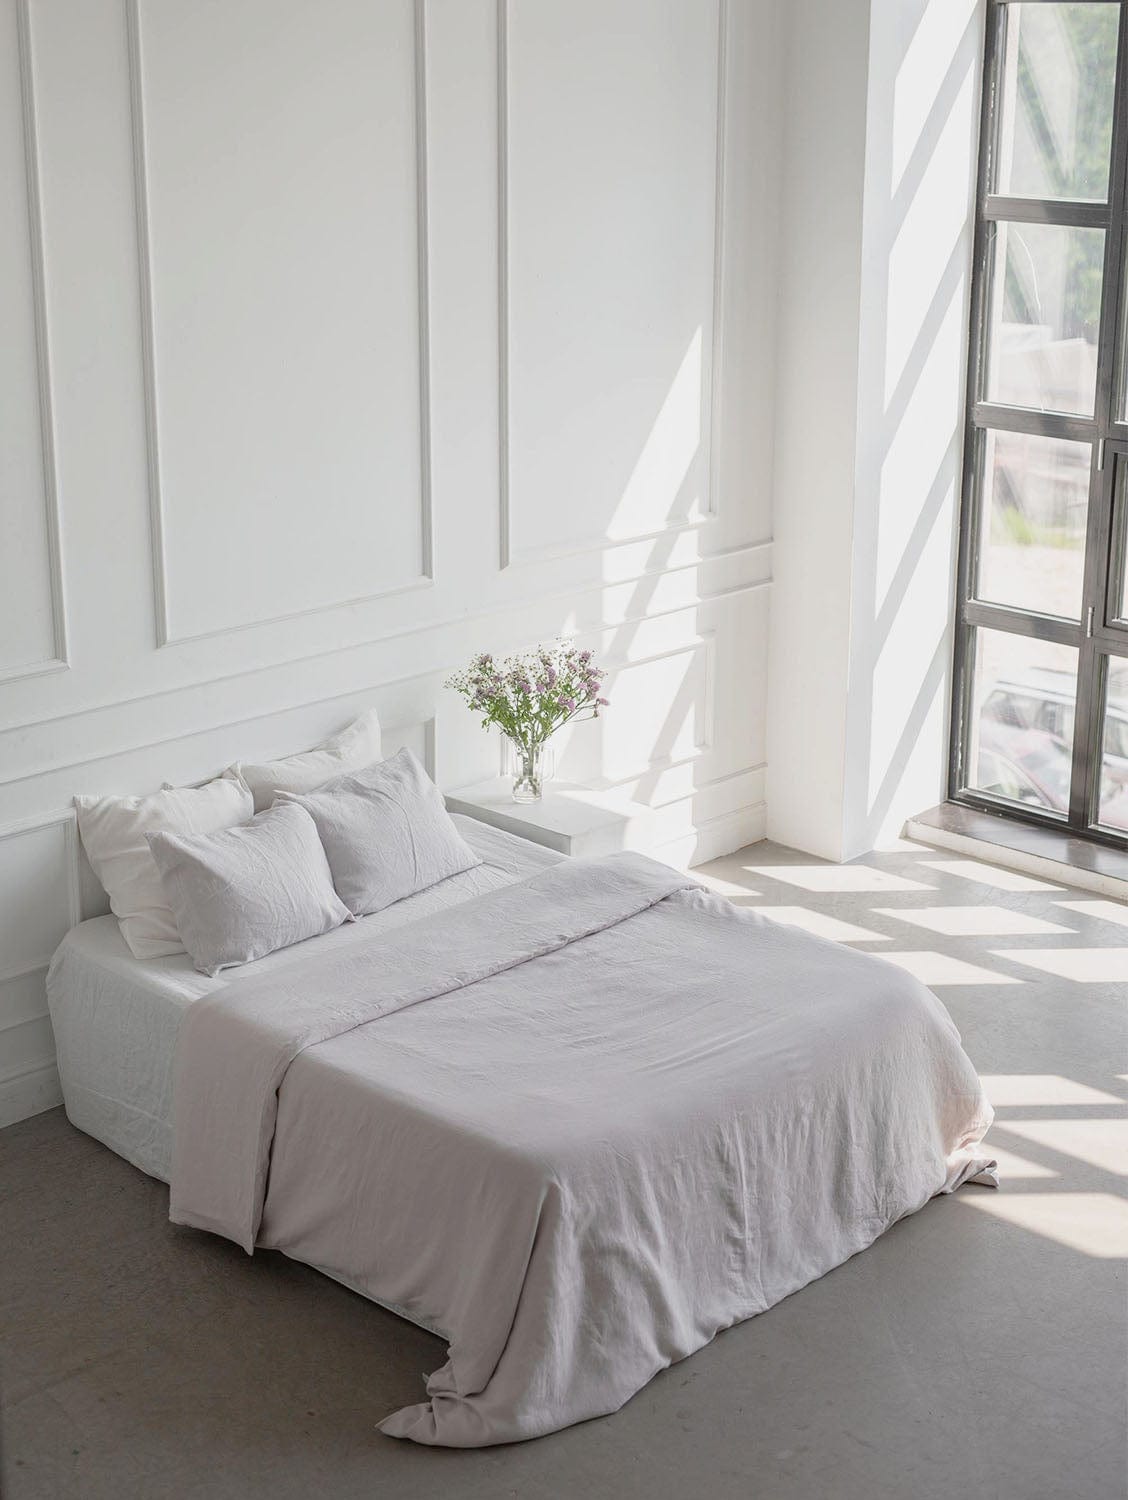 AmourLinen Linen bedding set in Cream US Double + Standart / Cream